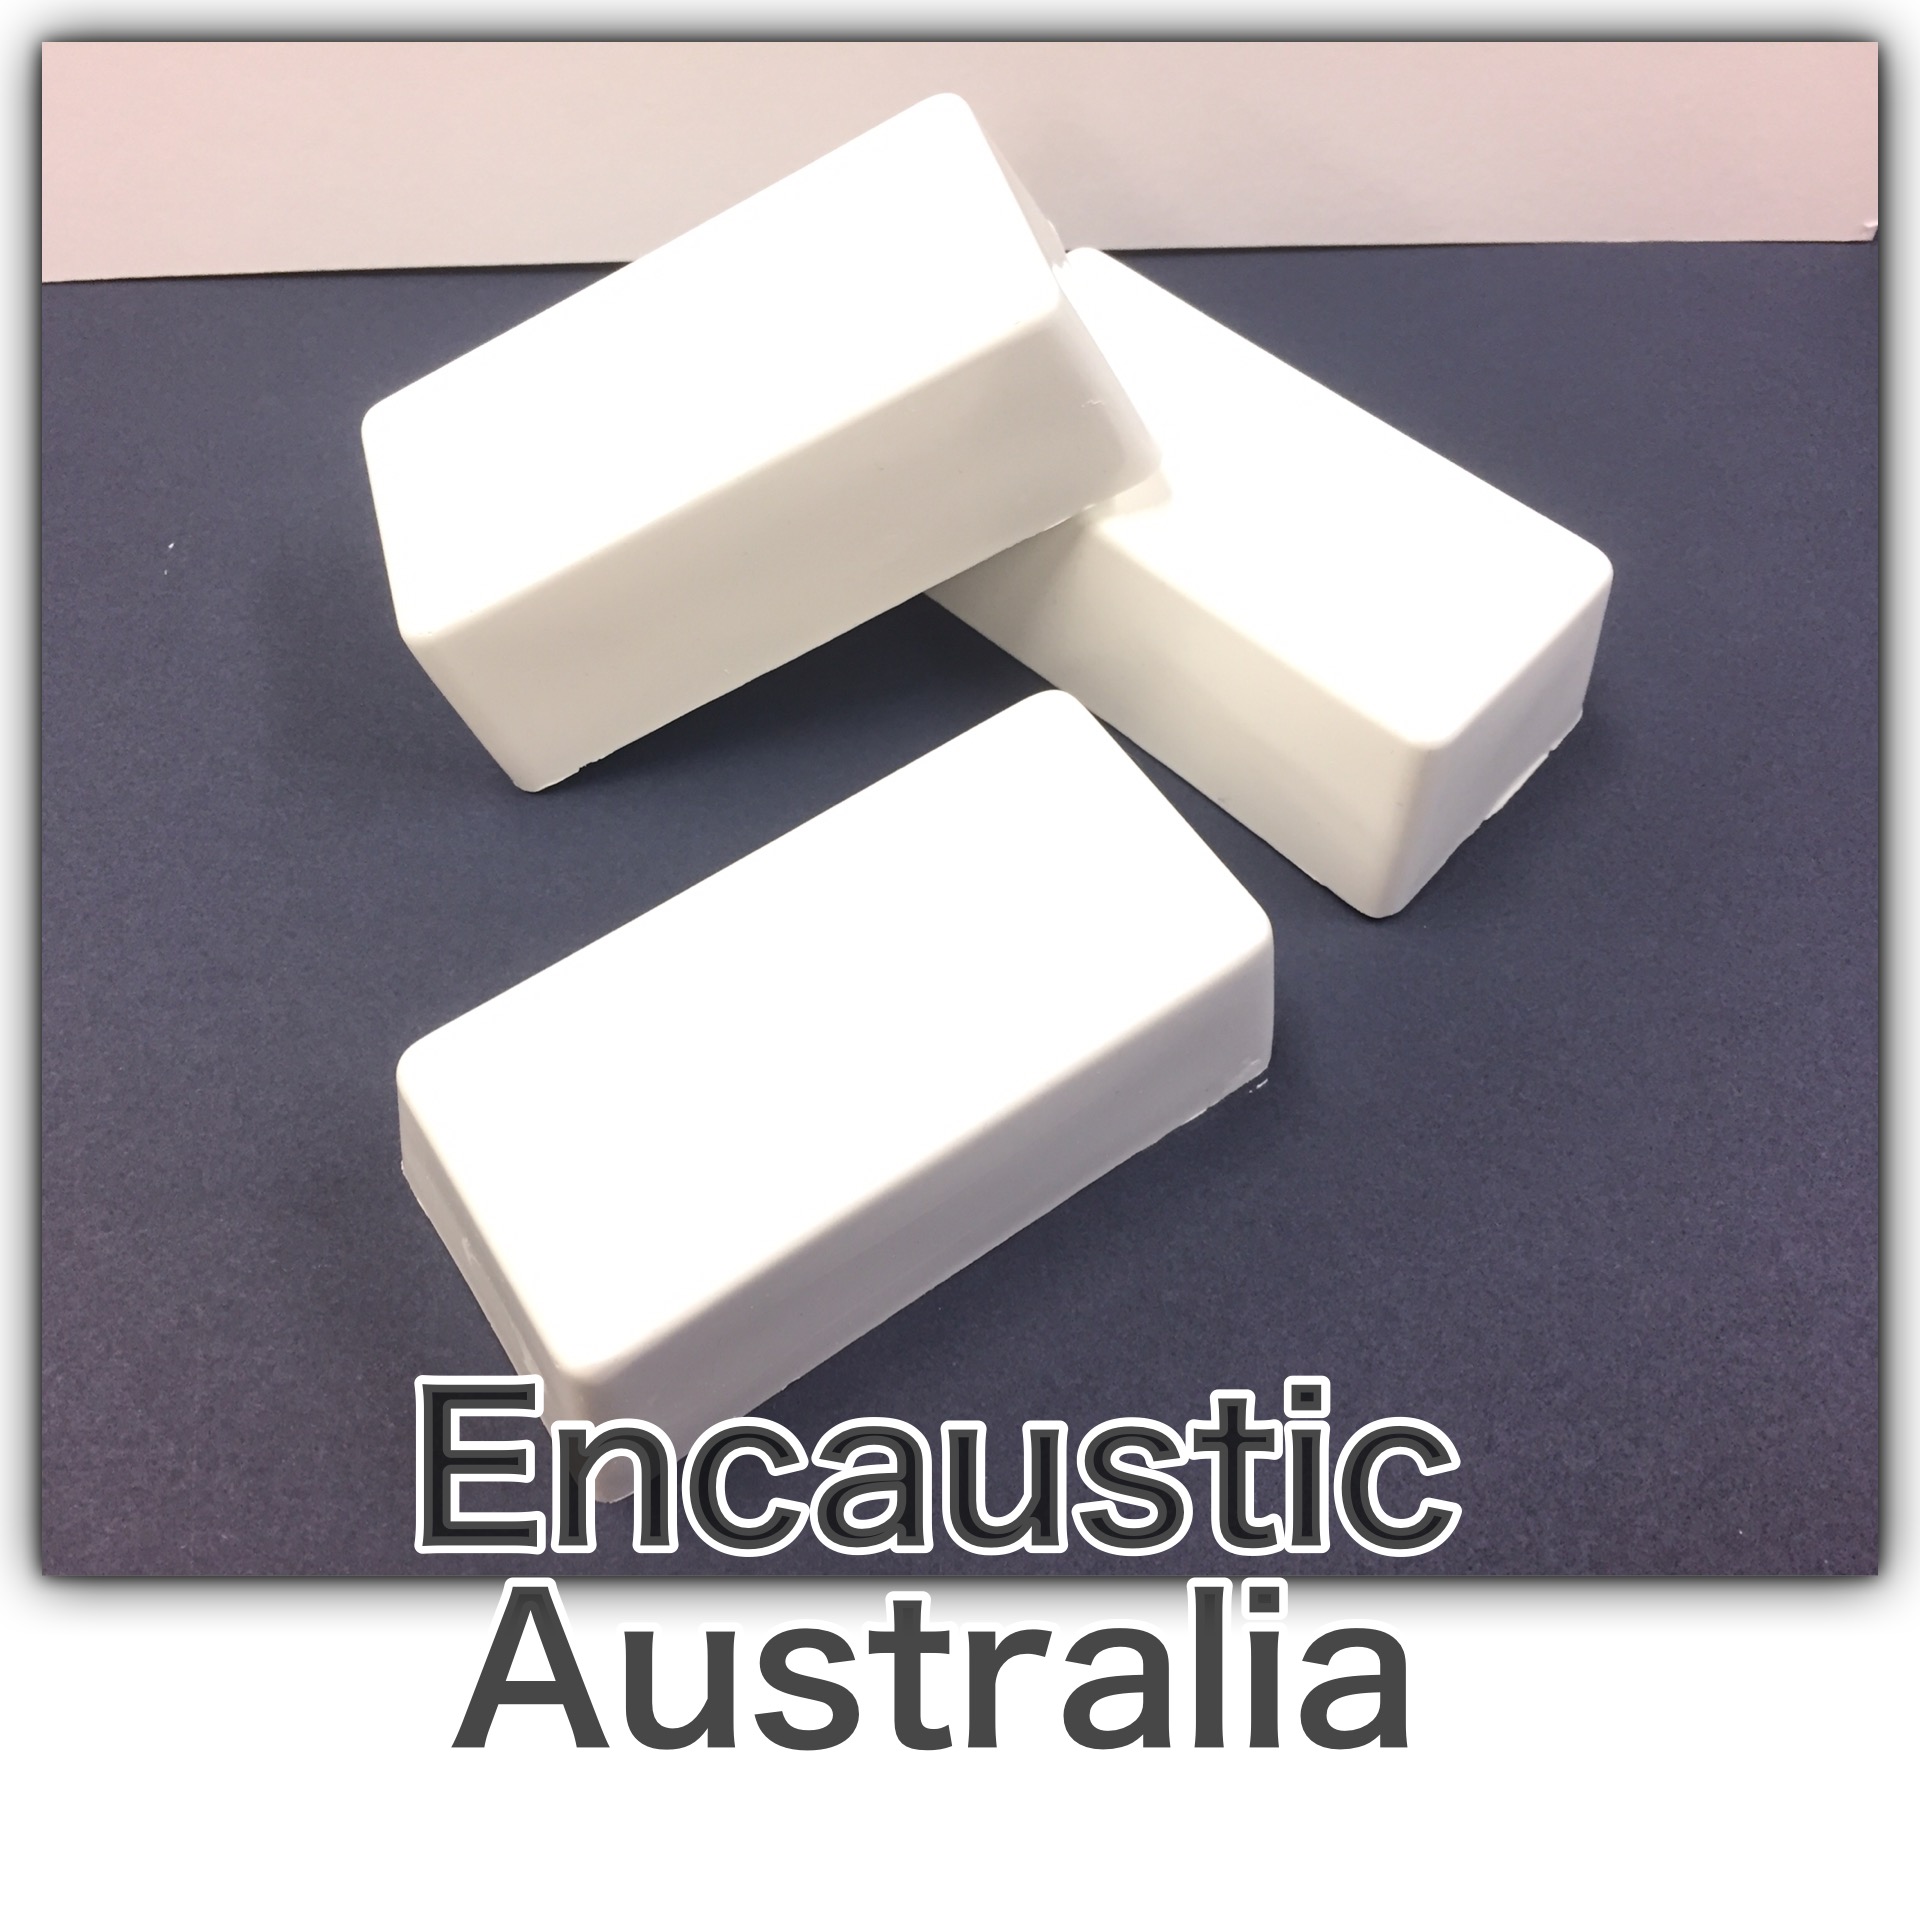 Encaustic Australia - Titanium White 110g - 1 x Block